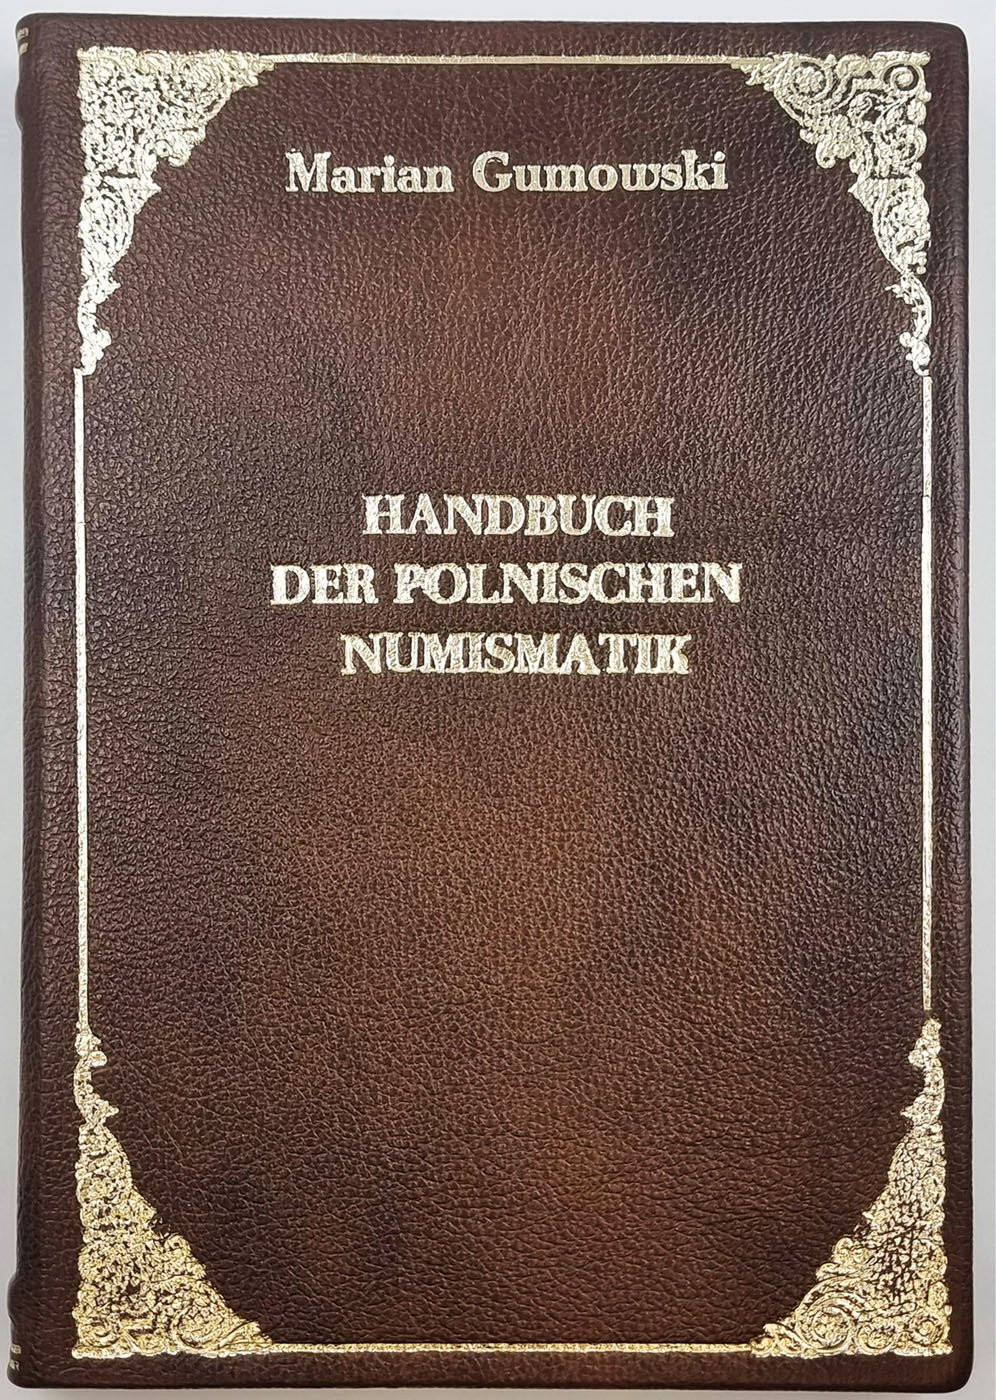 Marian Gumowski - Handbuch der polnischen Numismatik - OPRAWIONE